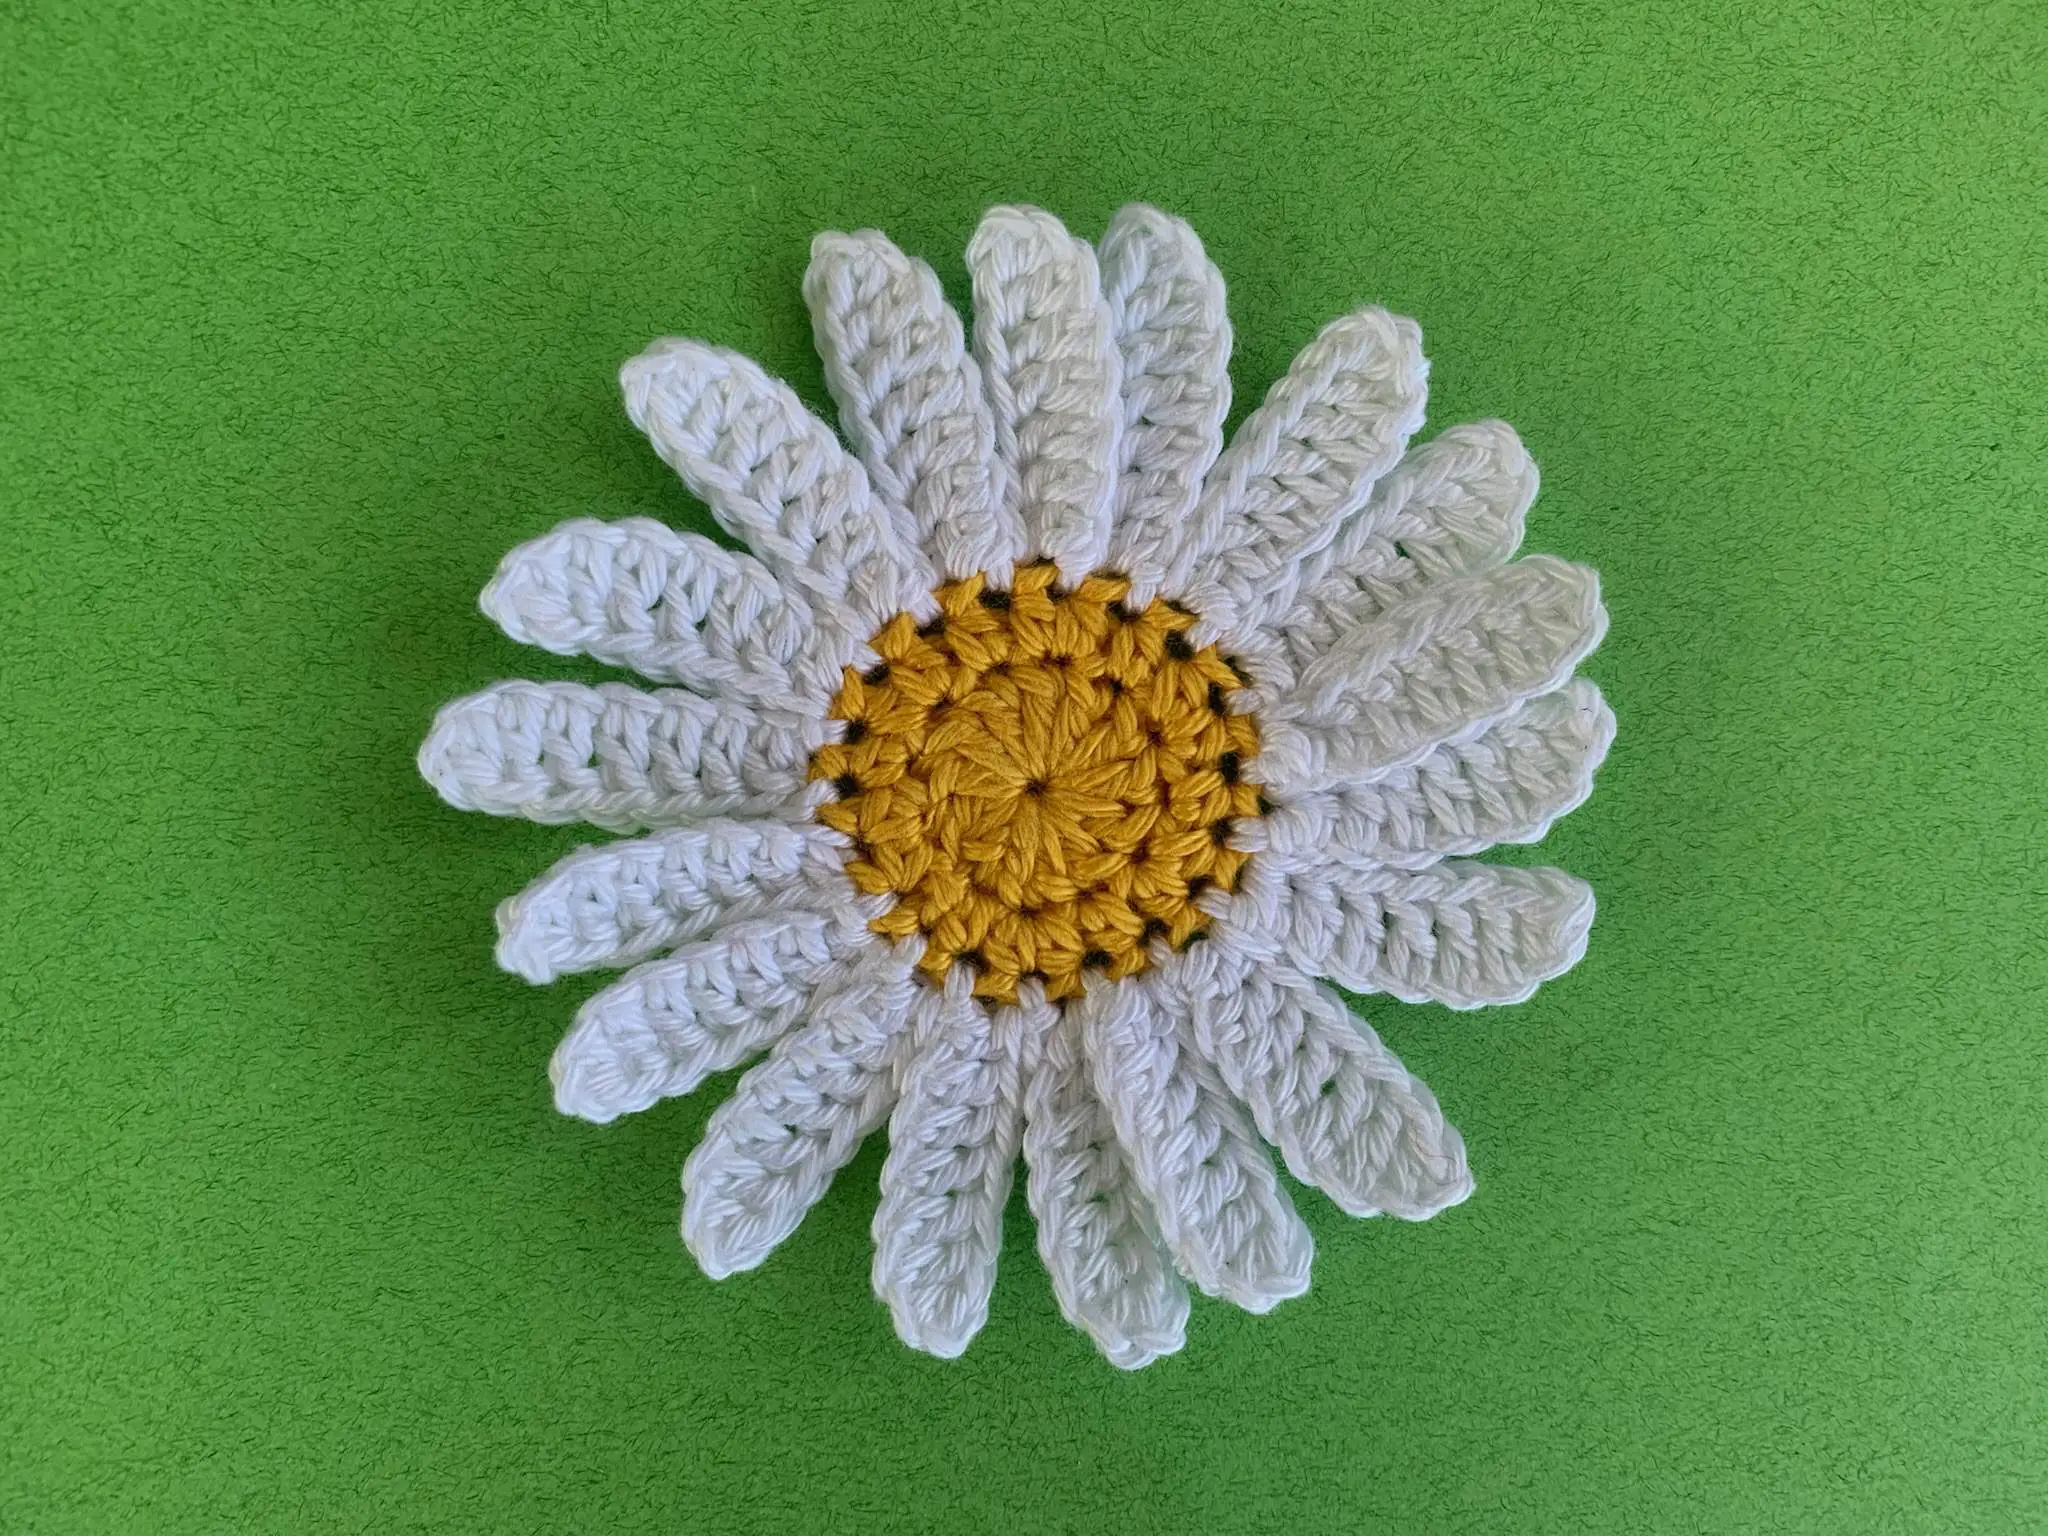 Finished crochet daisy 4 ply landscape